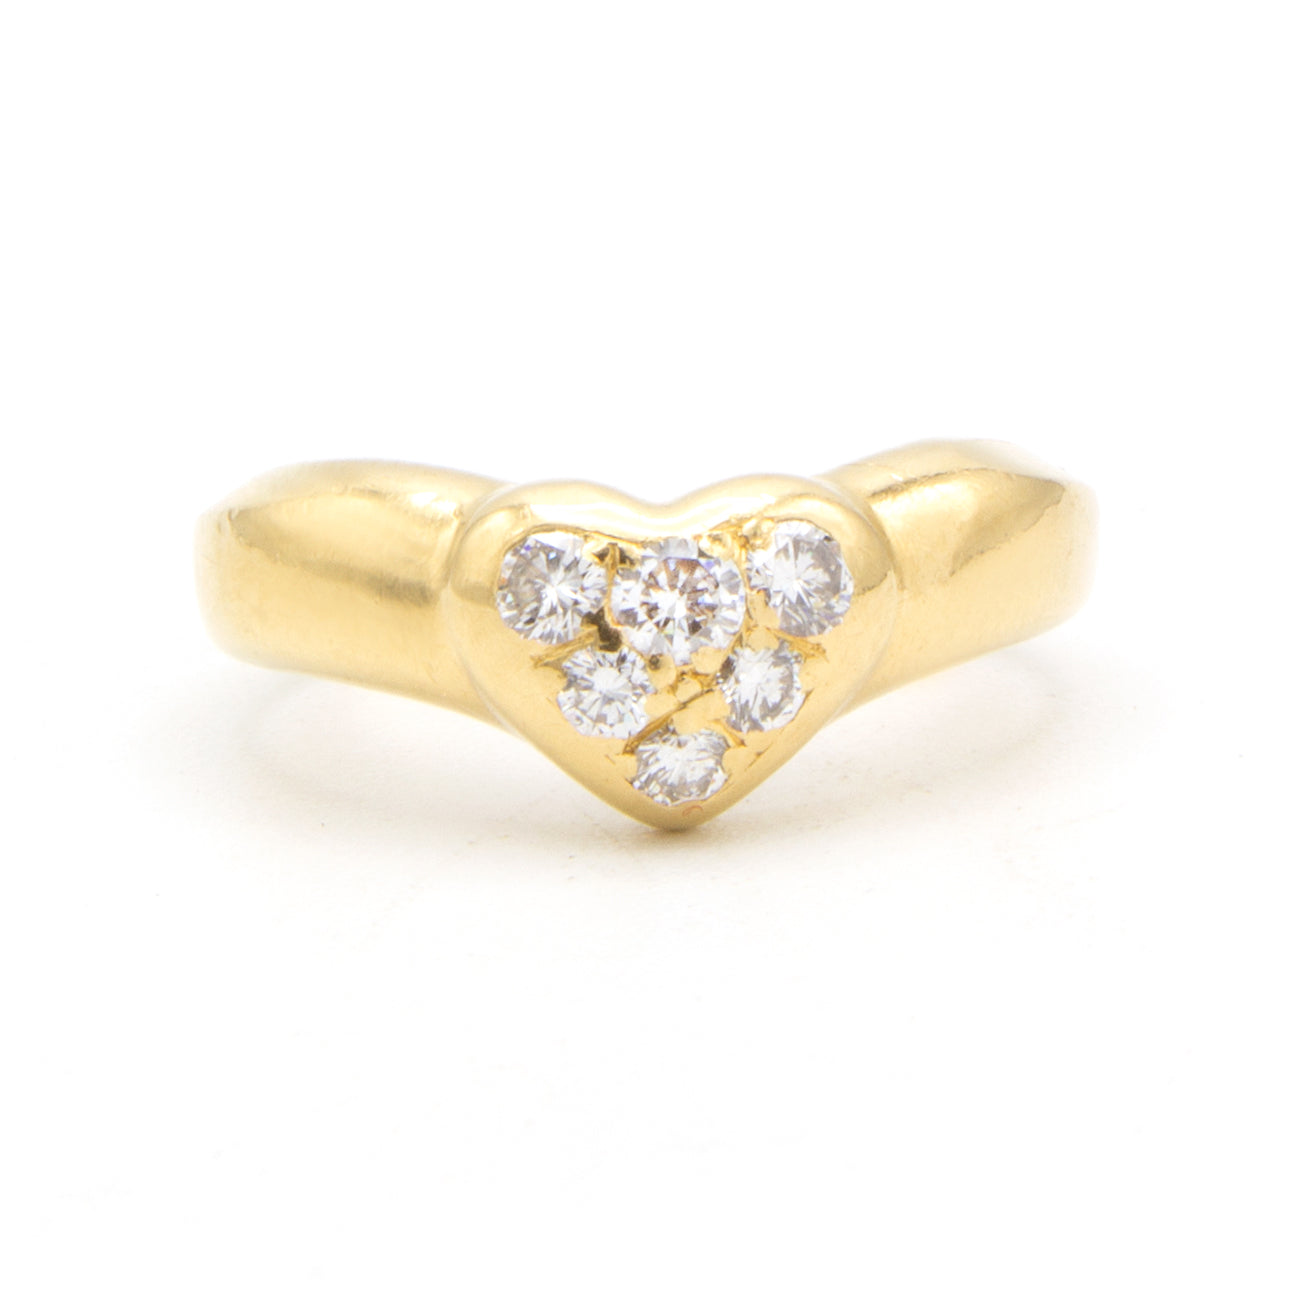 Tiffany & Co "Heart" 18K ring